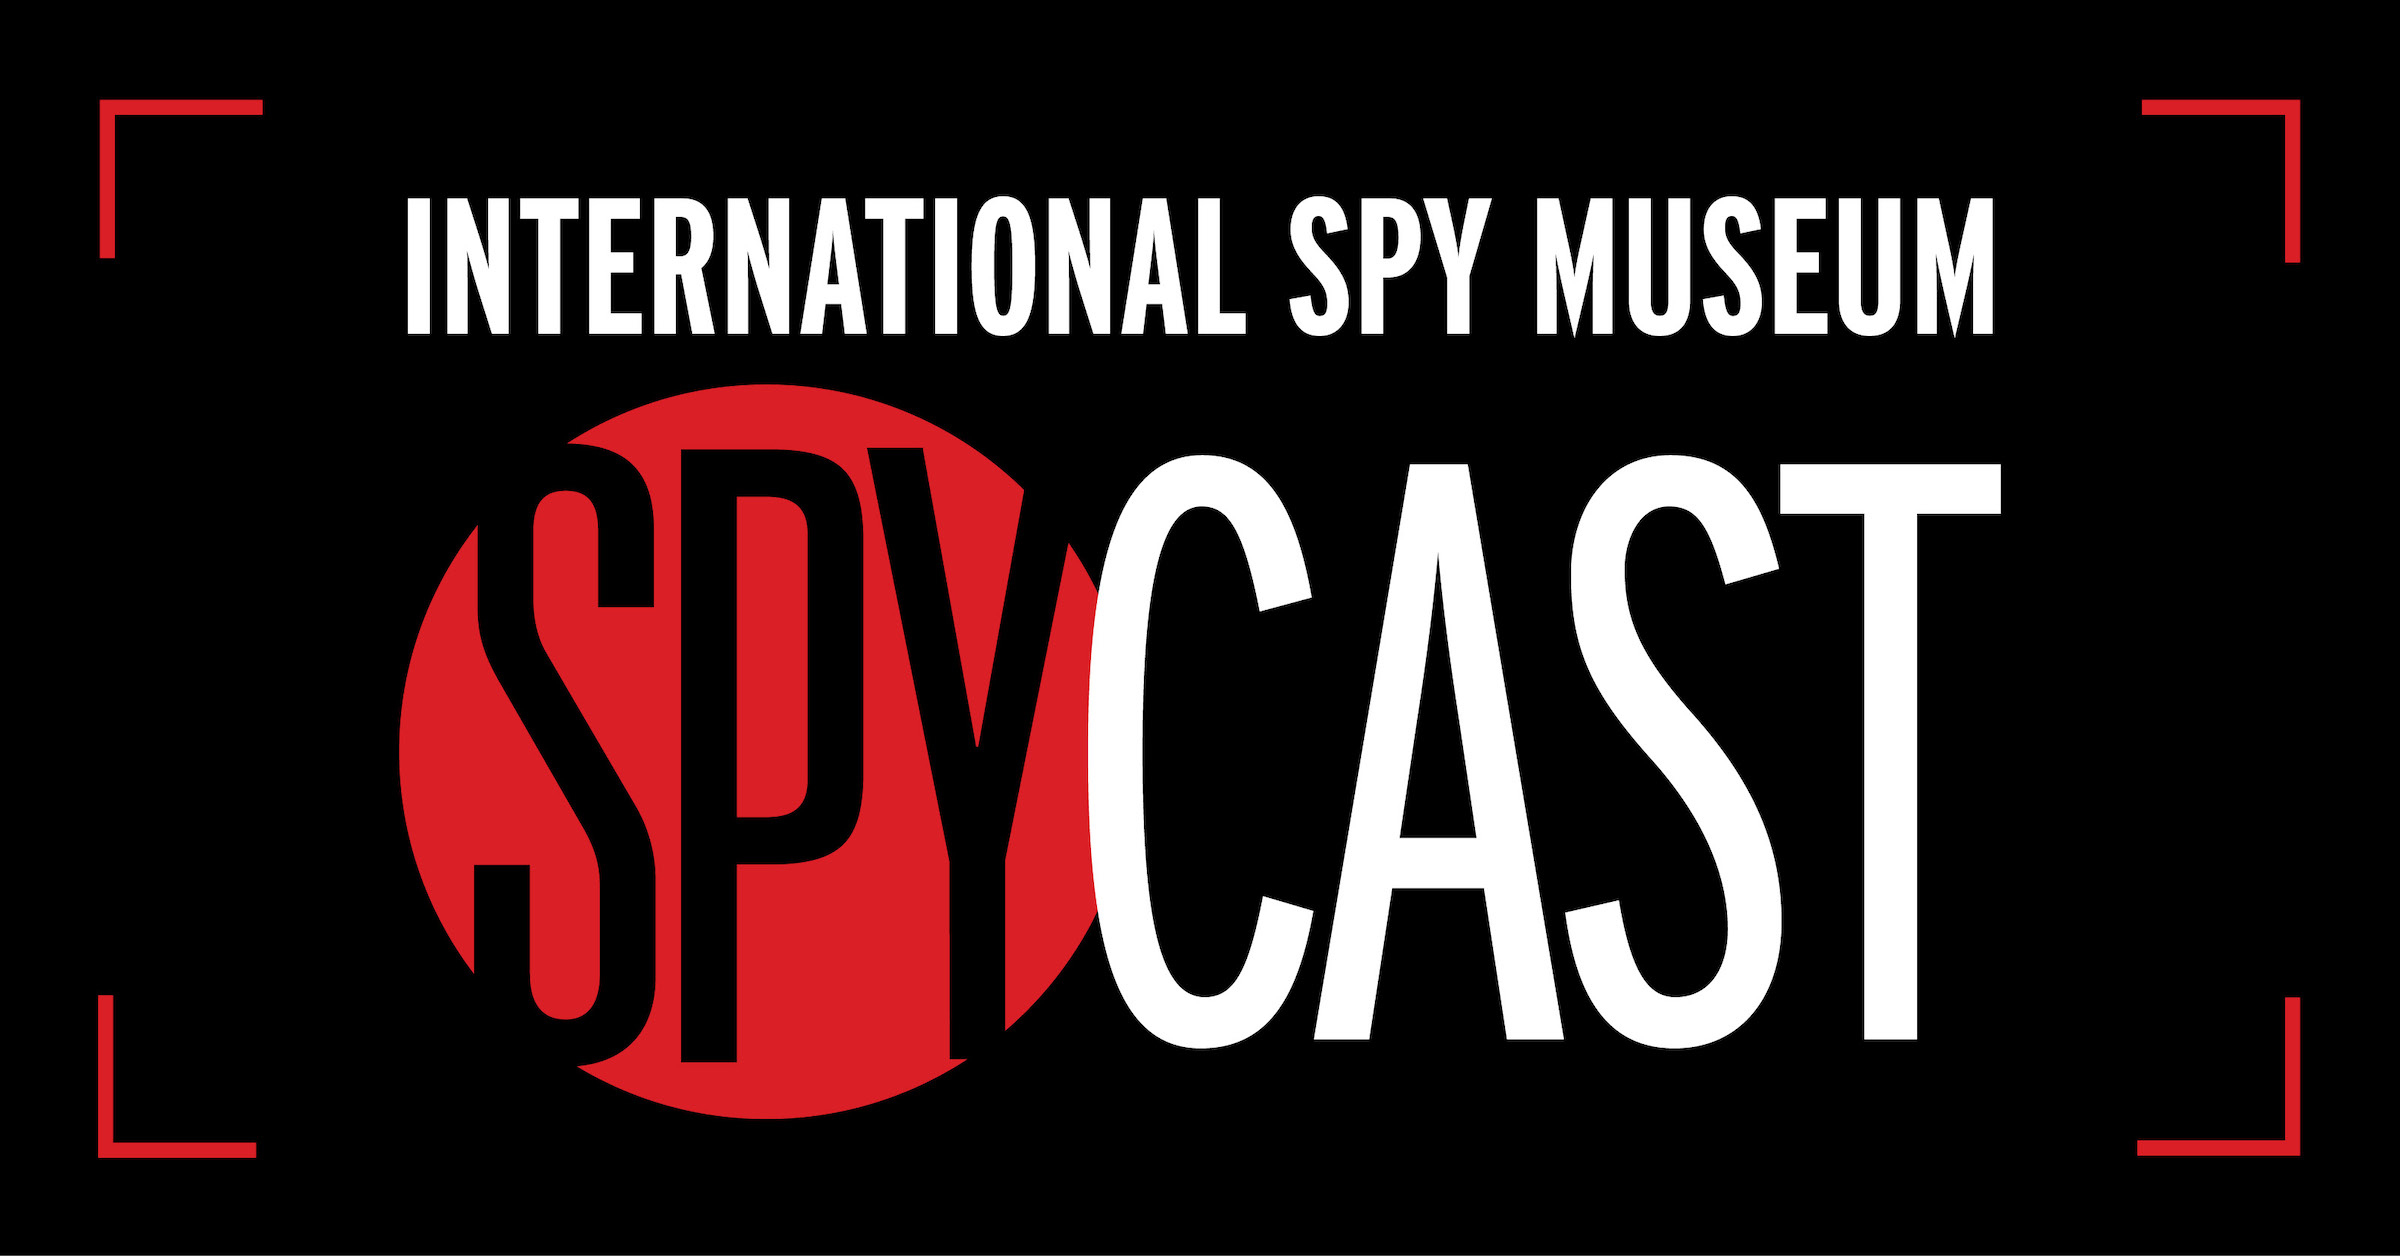 Spycast 6.6.17